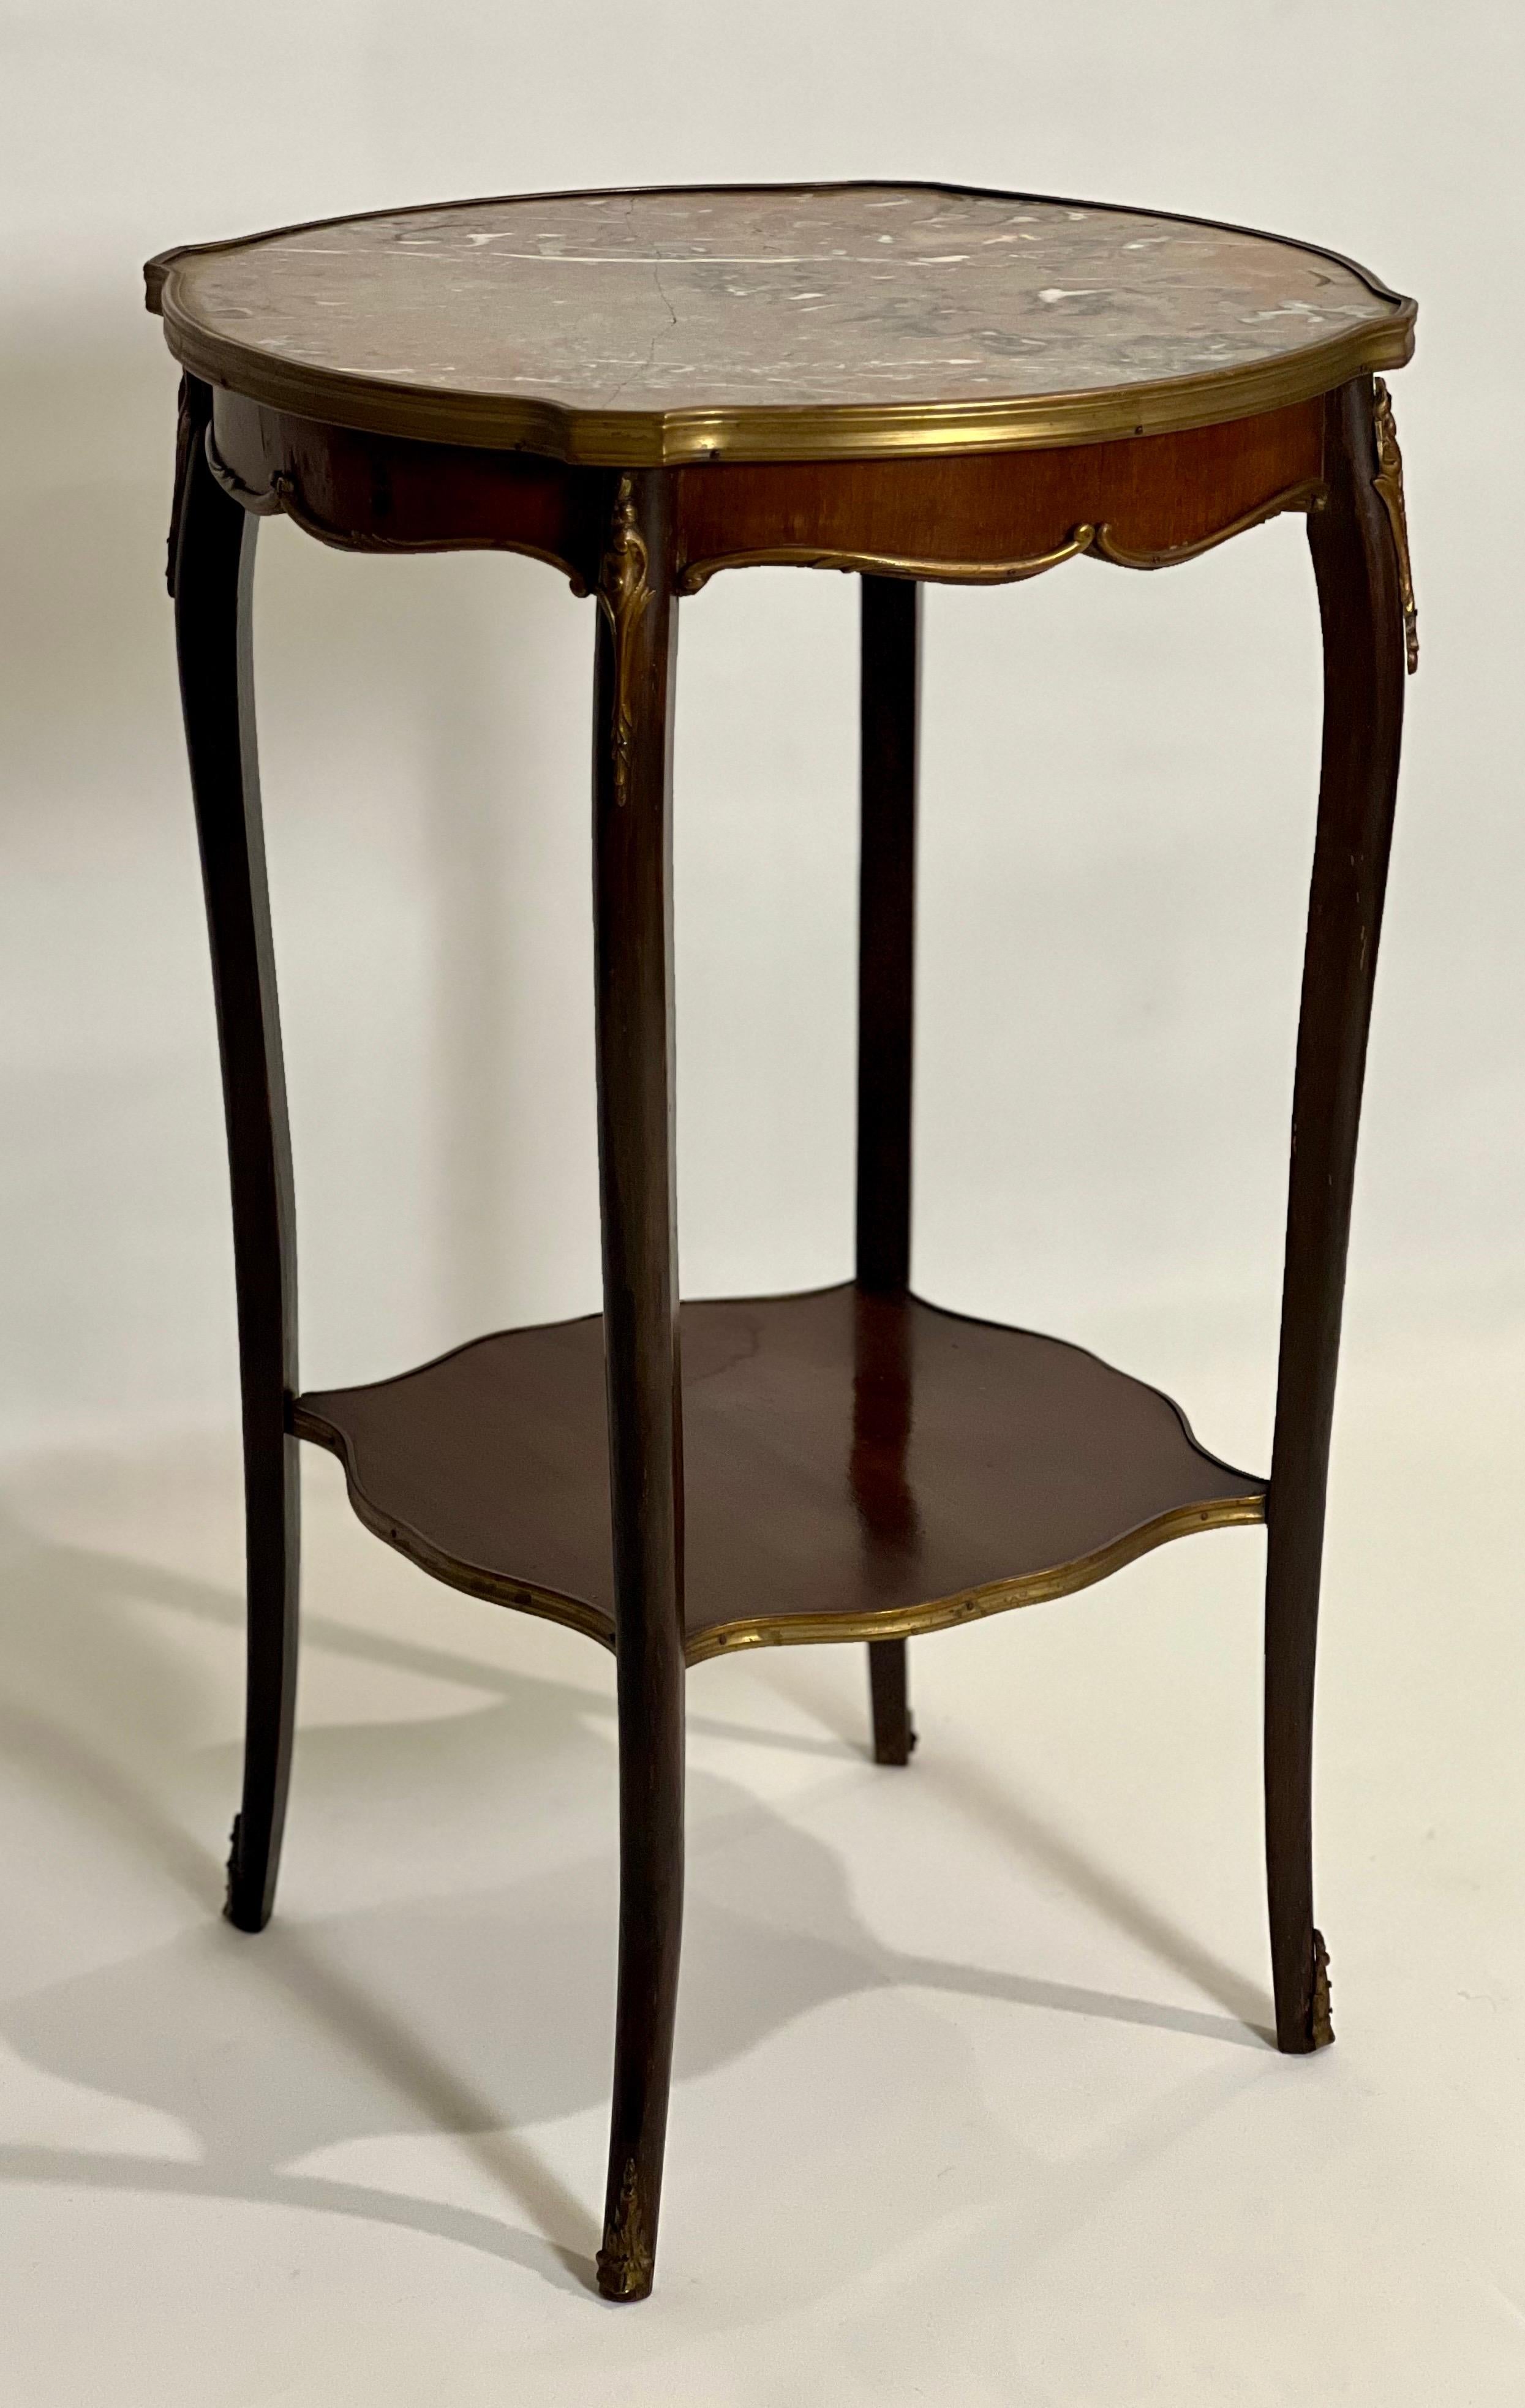 Antiker französischer Beistelltisch mit Marmorplatte im Louis-XV-Stil, Bronze, ca. 1890-1900.

Ein gut ausgestatteter französischer Tisch mit feinen Bronzeverzierungen, einer eingepassten Griotte-Marmorplatte, geschmeidigen Cabriole-Beinen und einer